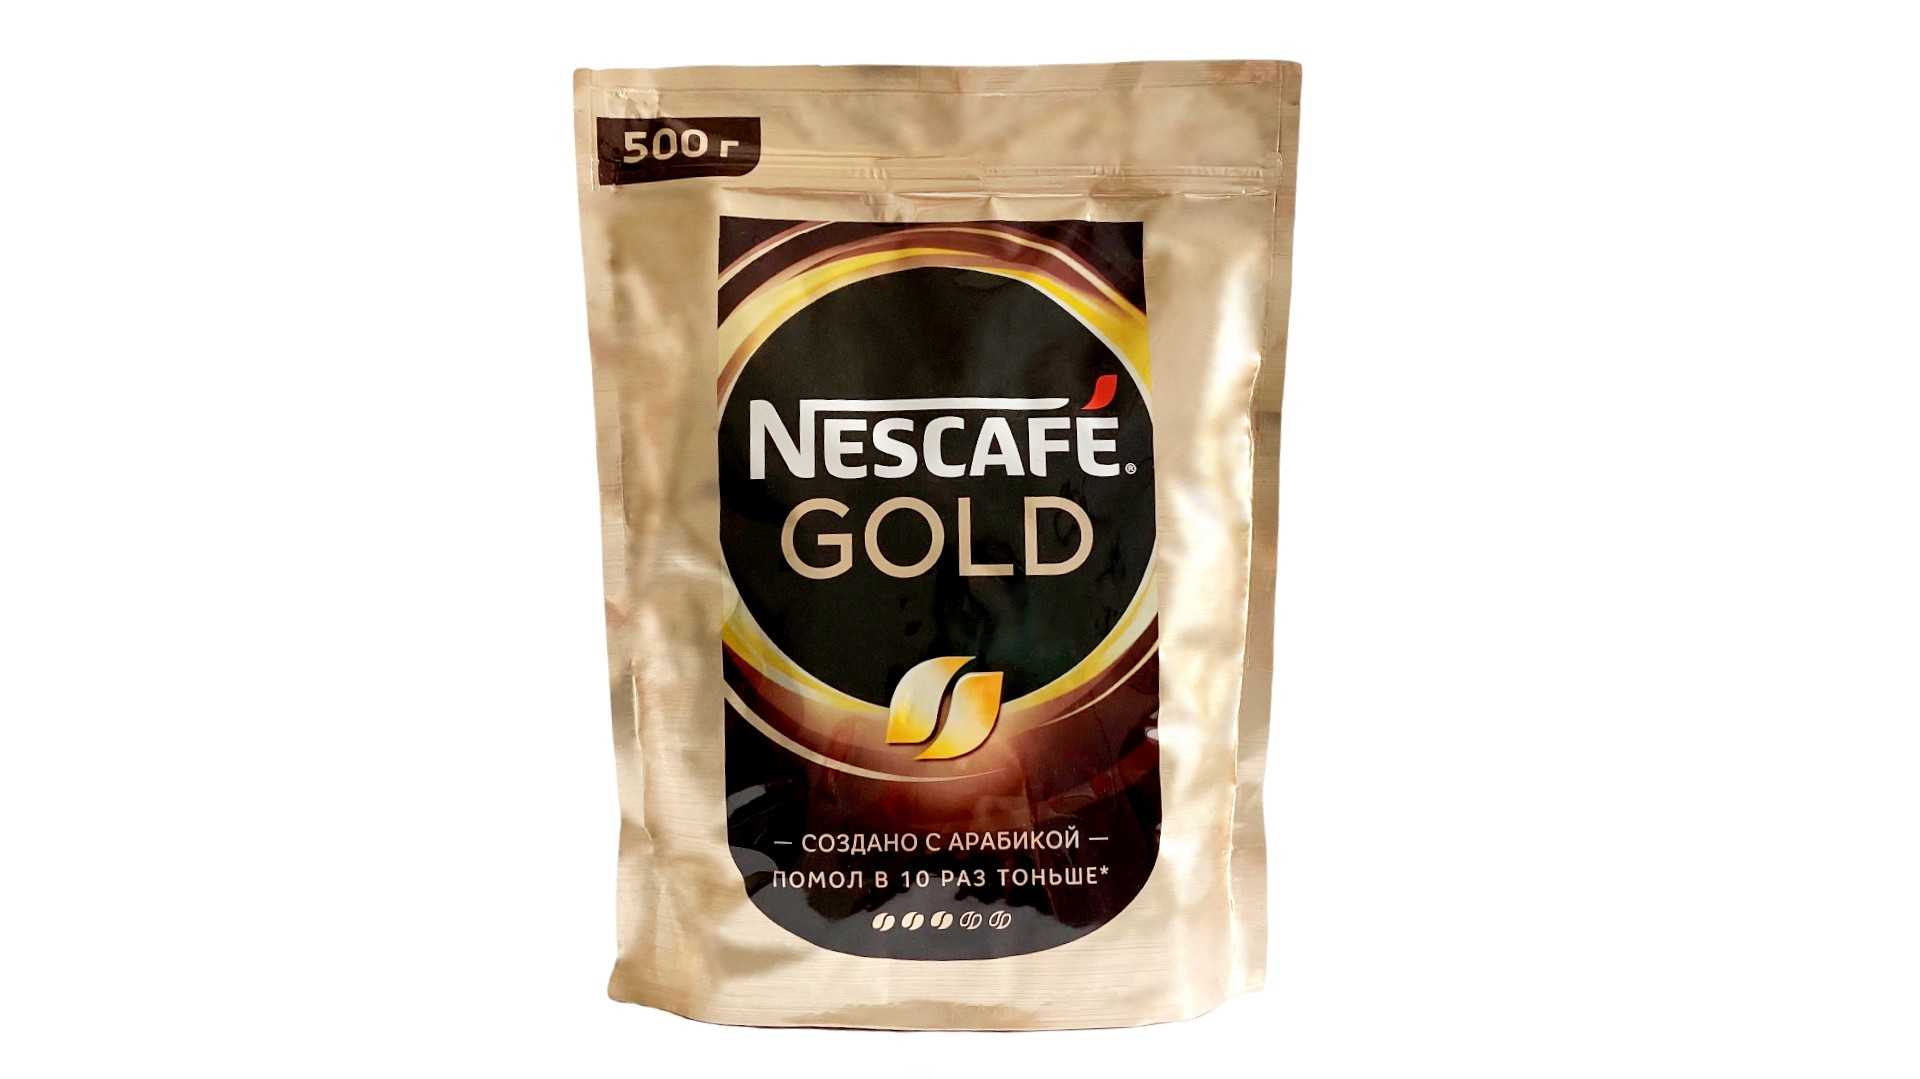 Кофе nescafe gold 900 г. Кофе растворимый Нескафе Голд 500г сублимированный. Кофе Нескафе Голд 500г. Кофе Nescafe Gold пакет 500 гр. Кофе растворимый Нескафе Голд 500.